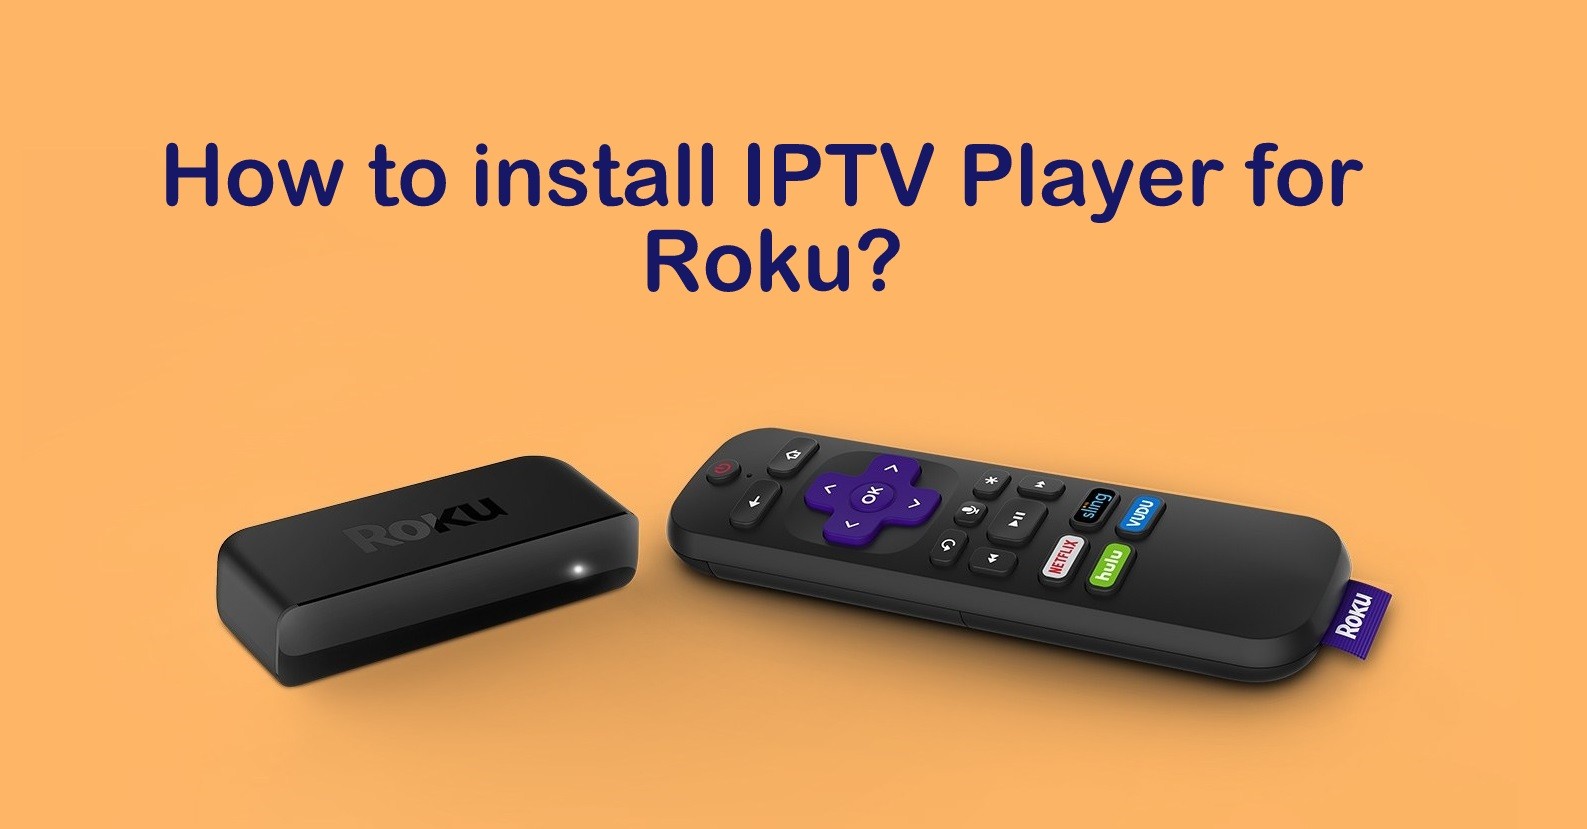 IPTV Player for Roku